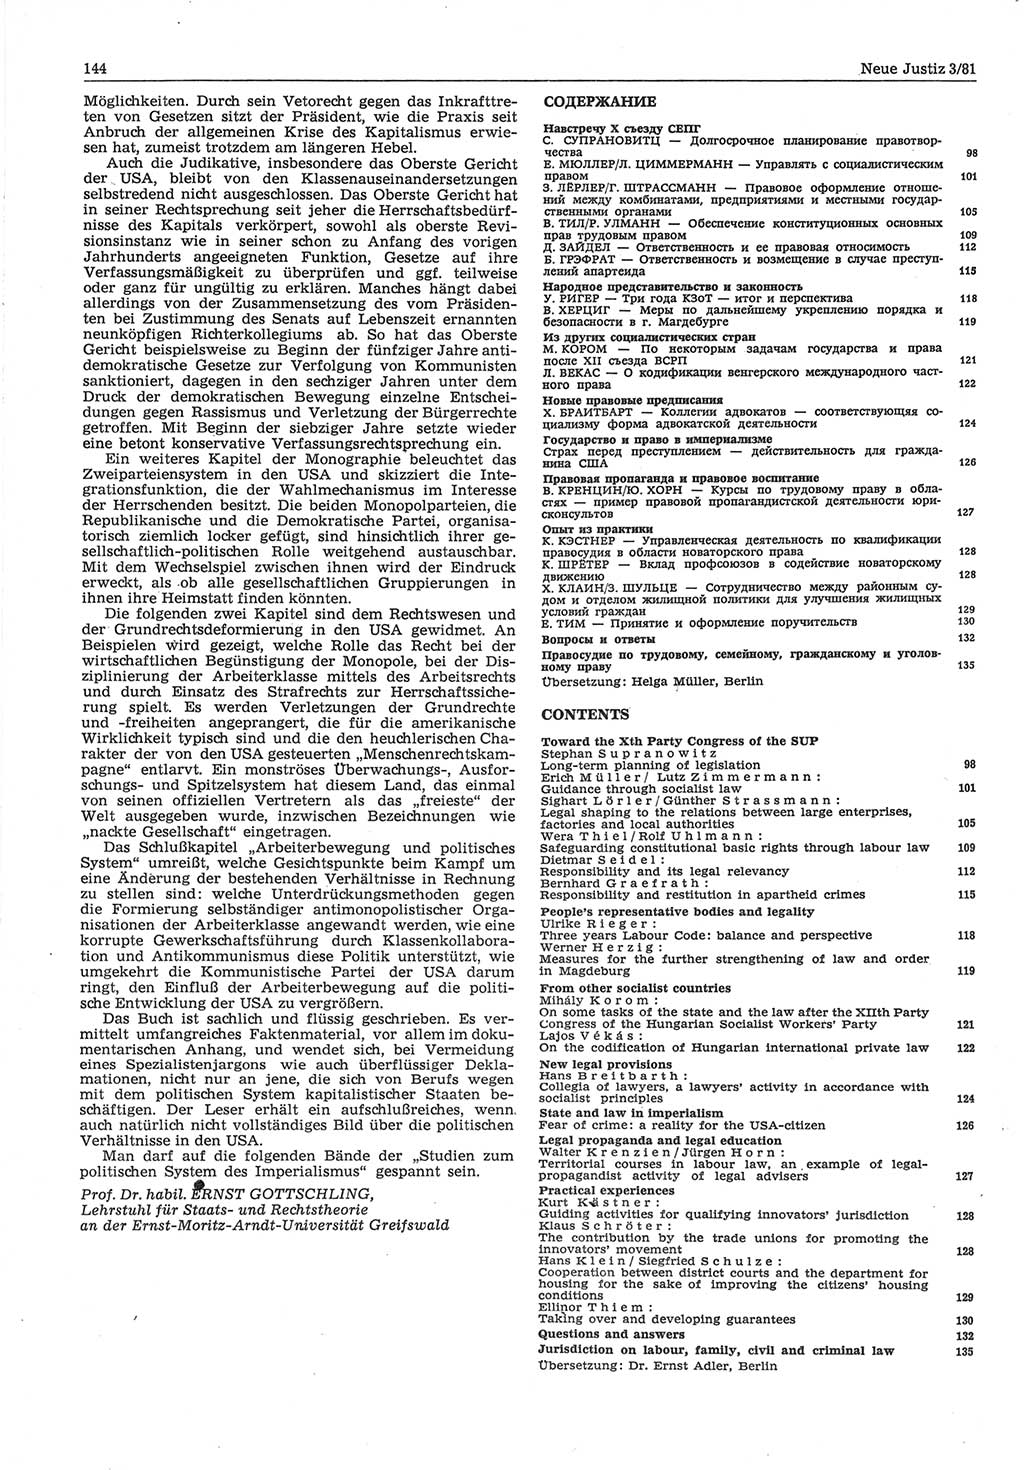 Neue Justiz (NJ), Zeitschrift für sozialistisches Recht und Gesetzlichkeit [Deutsche Demokratische Republik (DDR)], 35. Jahrgang 1981, Seite 144 (NJ DDR 1981, S. 144)